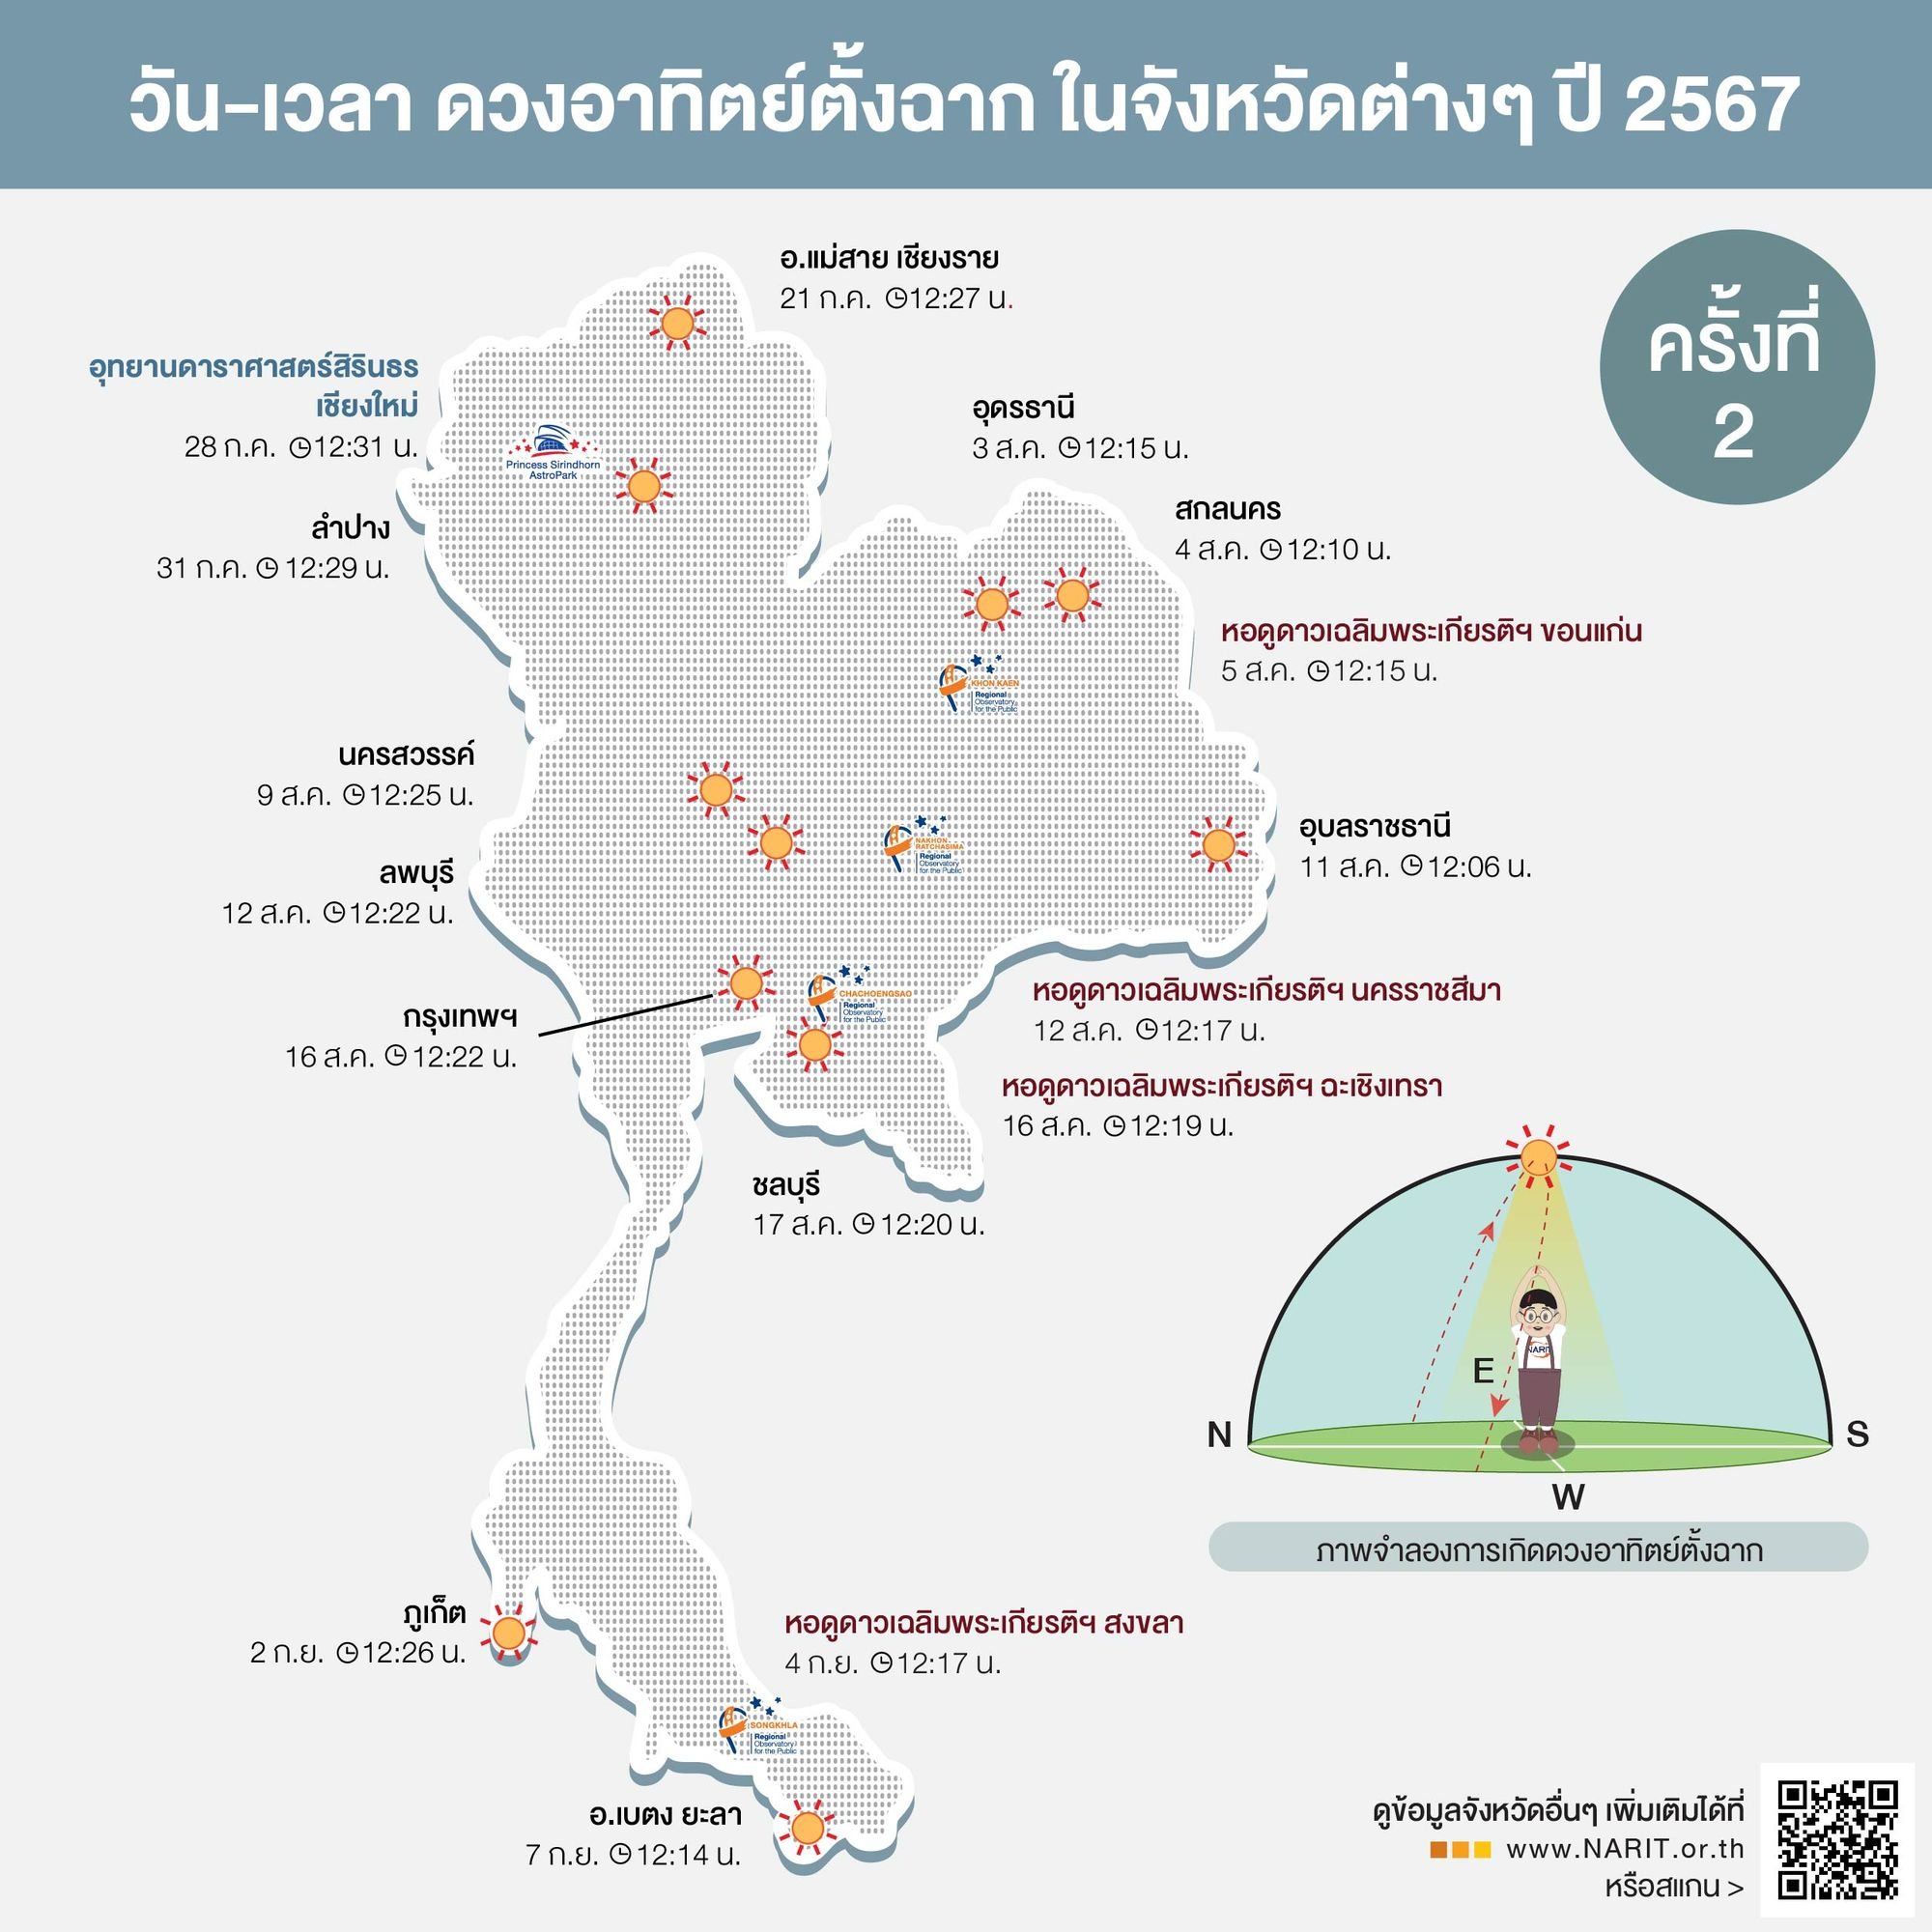 มาแล้ว! เปิดไทม์ไลน์ ดวงอาทิตย์ตั้งฉาก 77 จังหวัดของไทยปี 2567 เริ่มที่เบตง จบที่แม่สาย